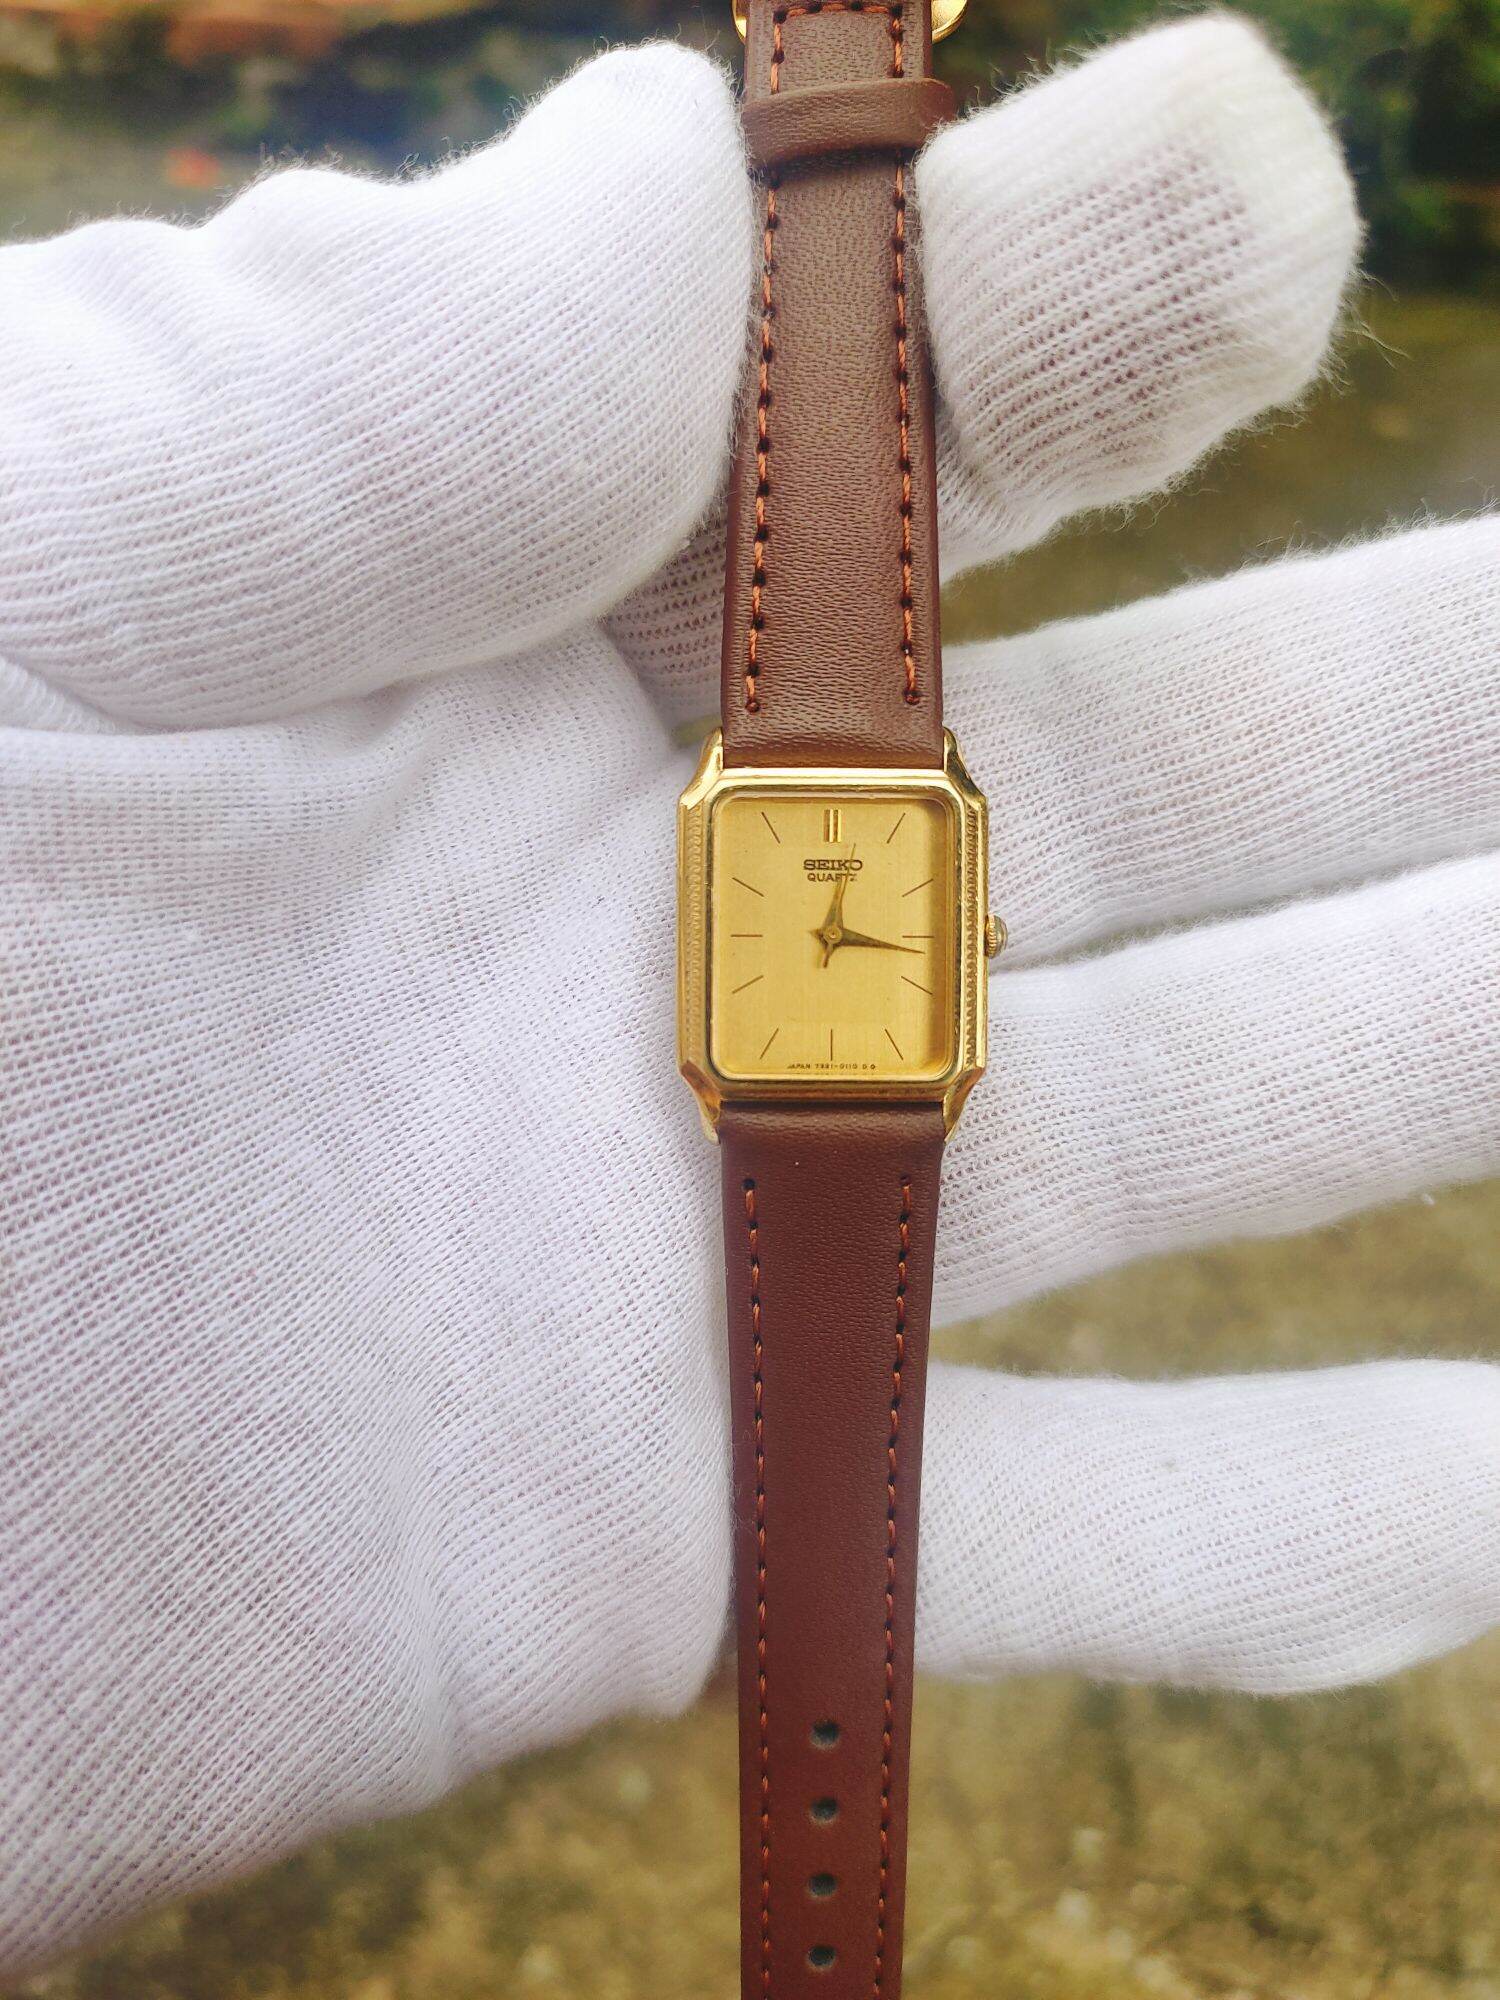 Đồng hồ seiko tank vàng toàn thân, mặt vàng cát cực đẹp, size mặt 22mm thumbnail